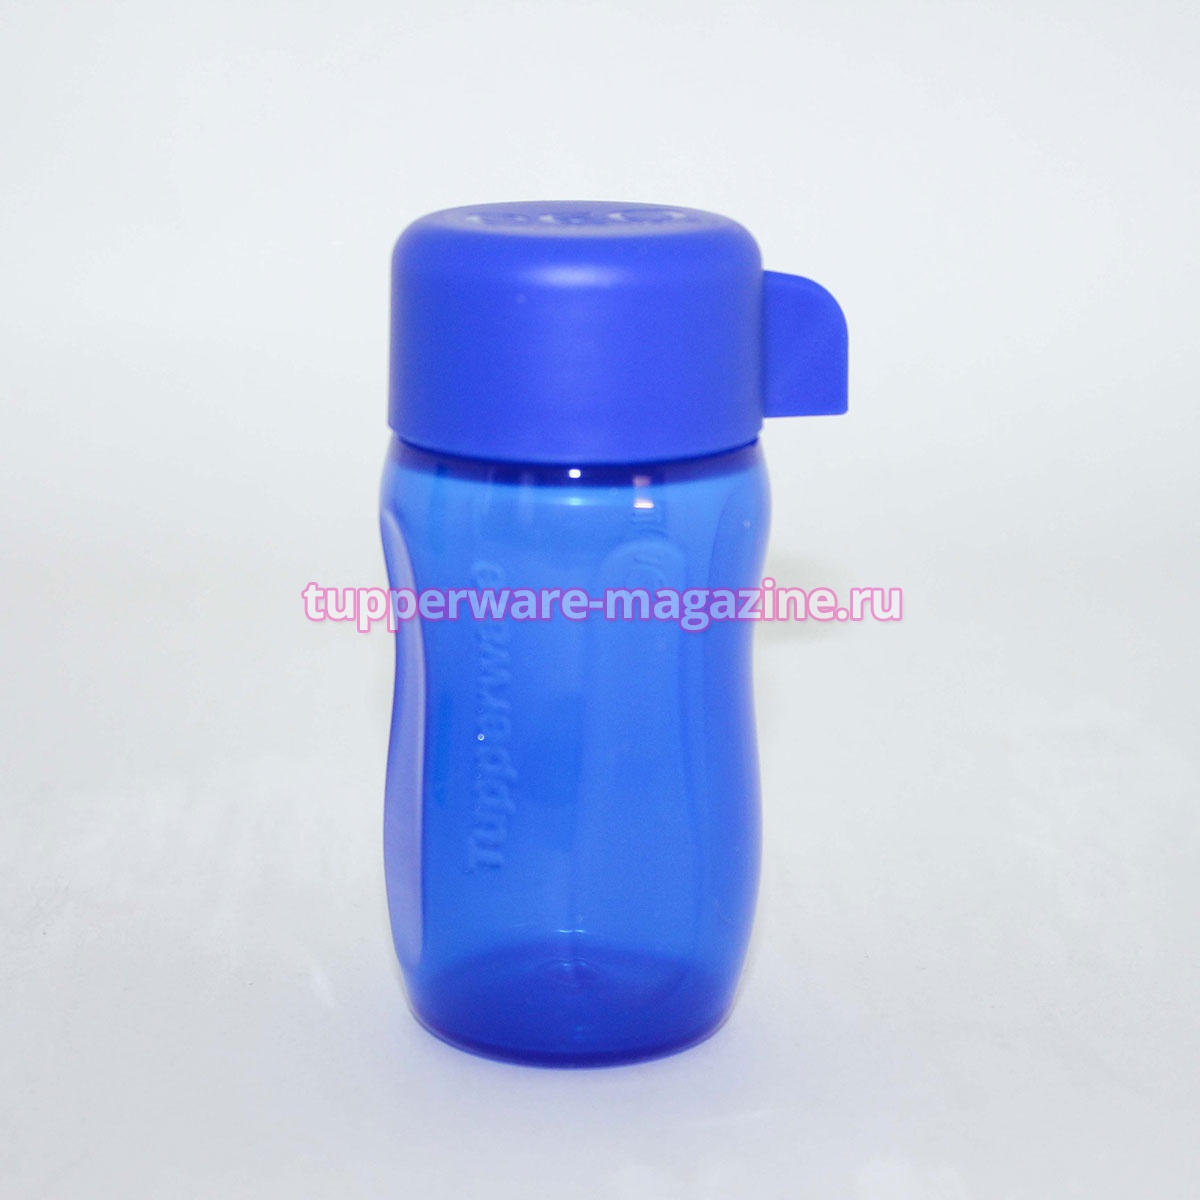 Эко-бутылка мини 90 мл без клапана в синем цвете